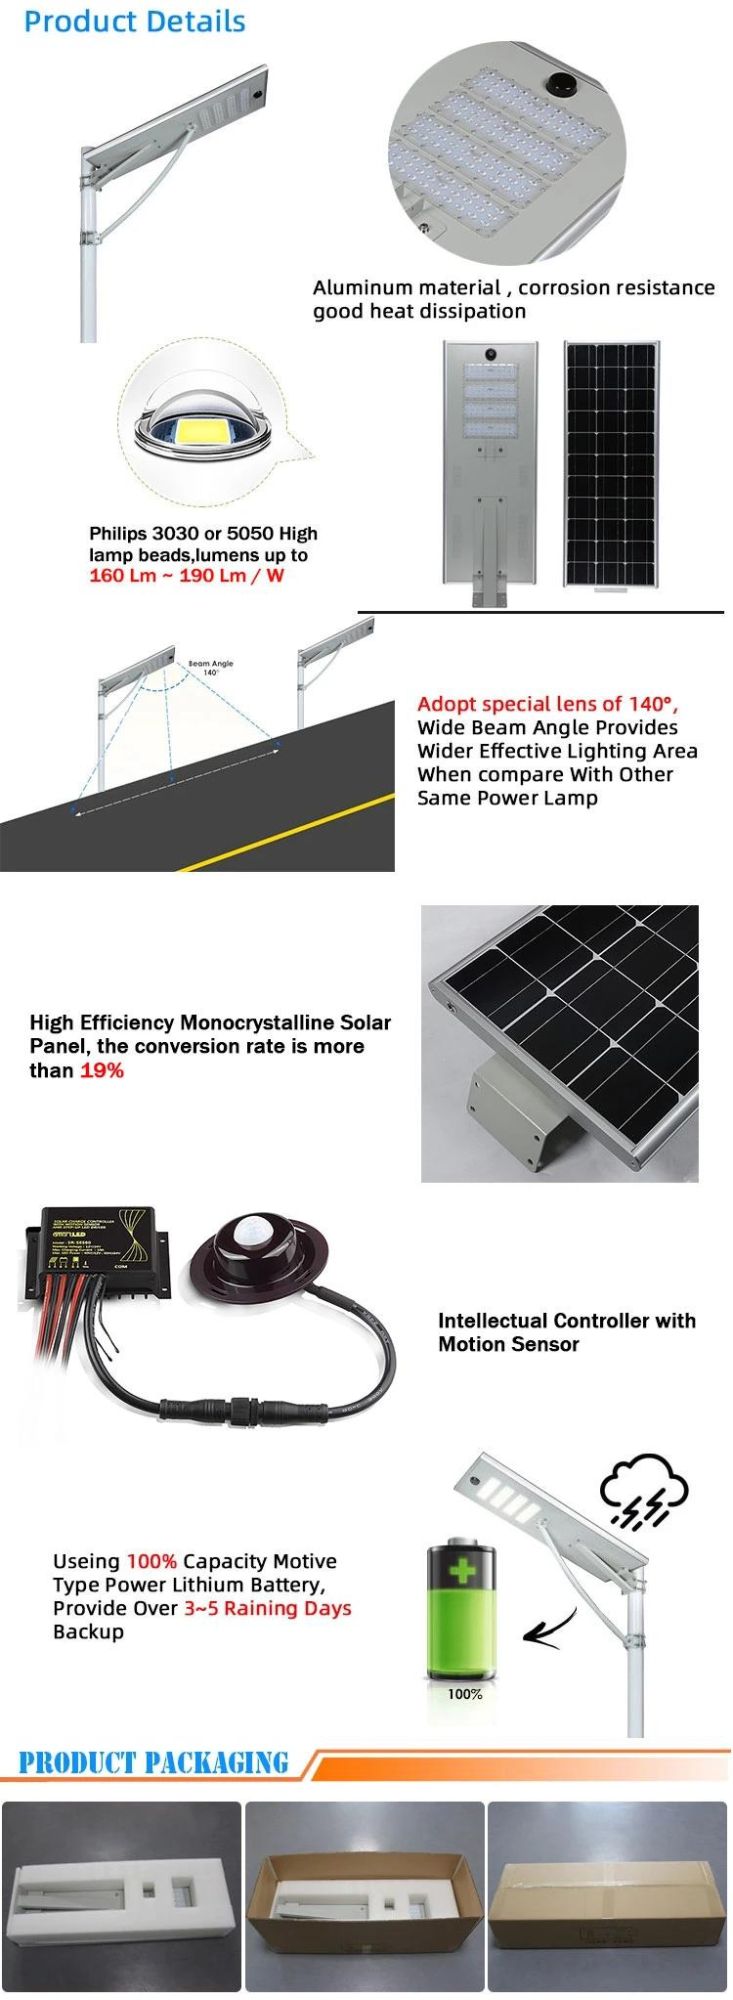 2020 Best Selling LED Integrated Solar Street Light IP65 Outdoor All in One Outdoor Solar Street Light